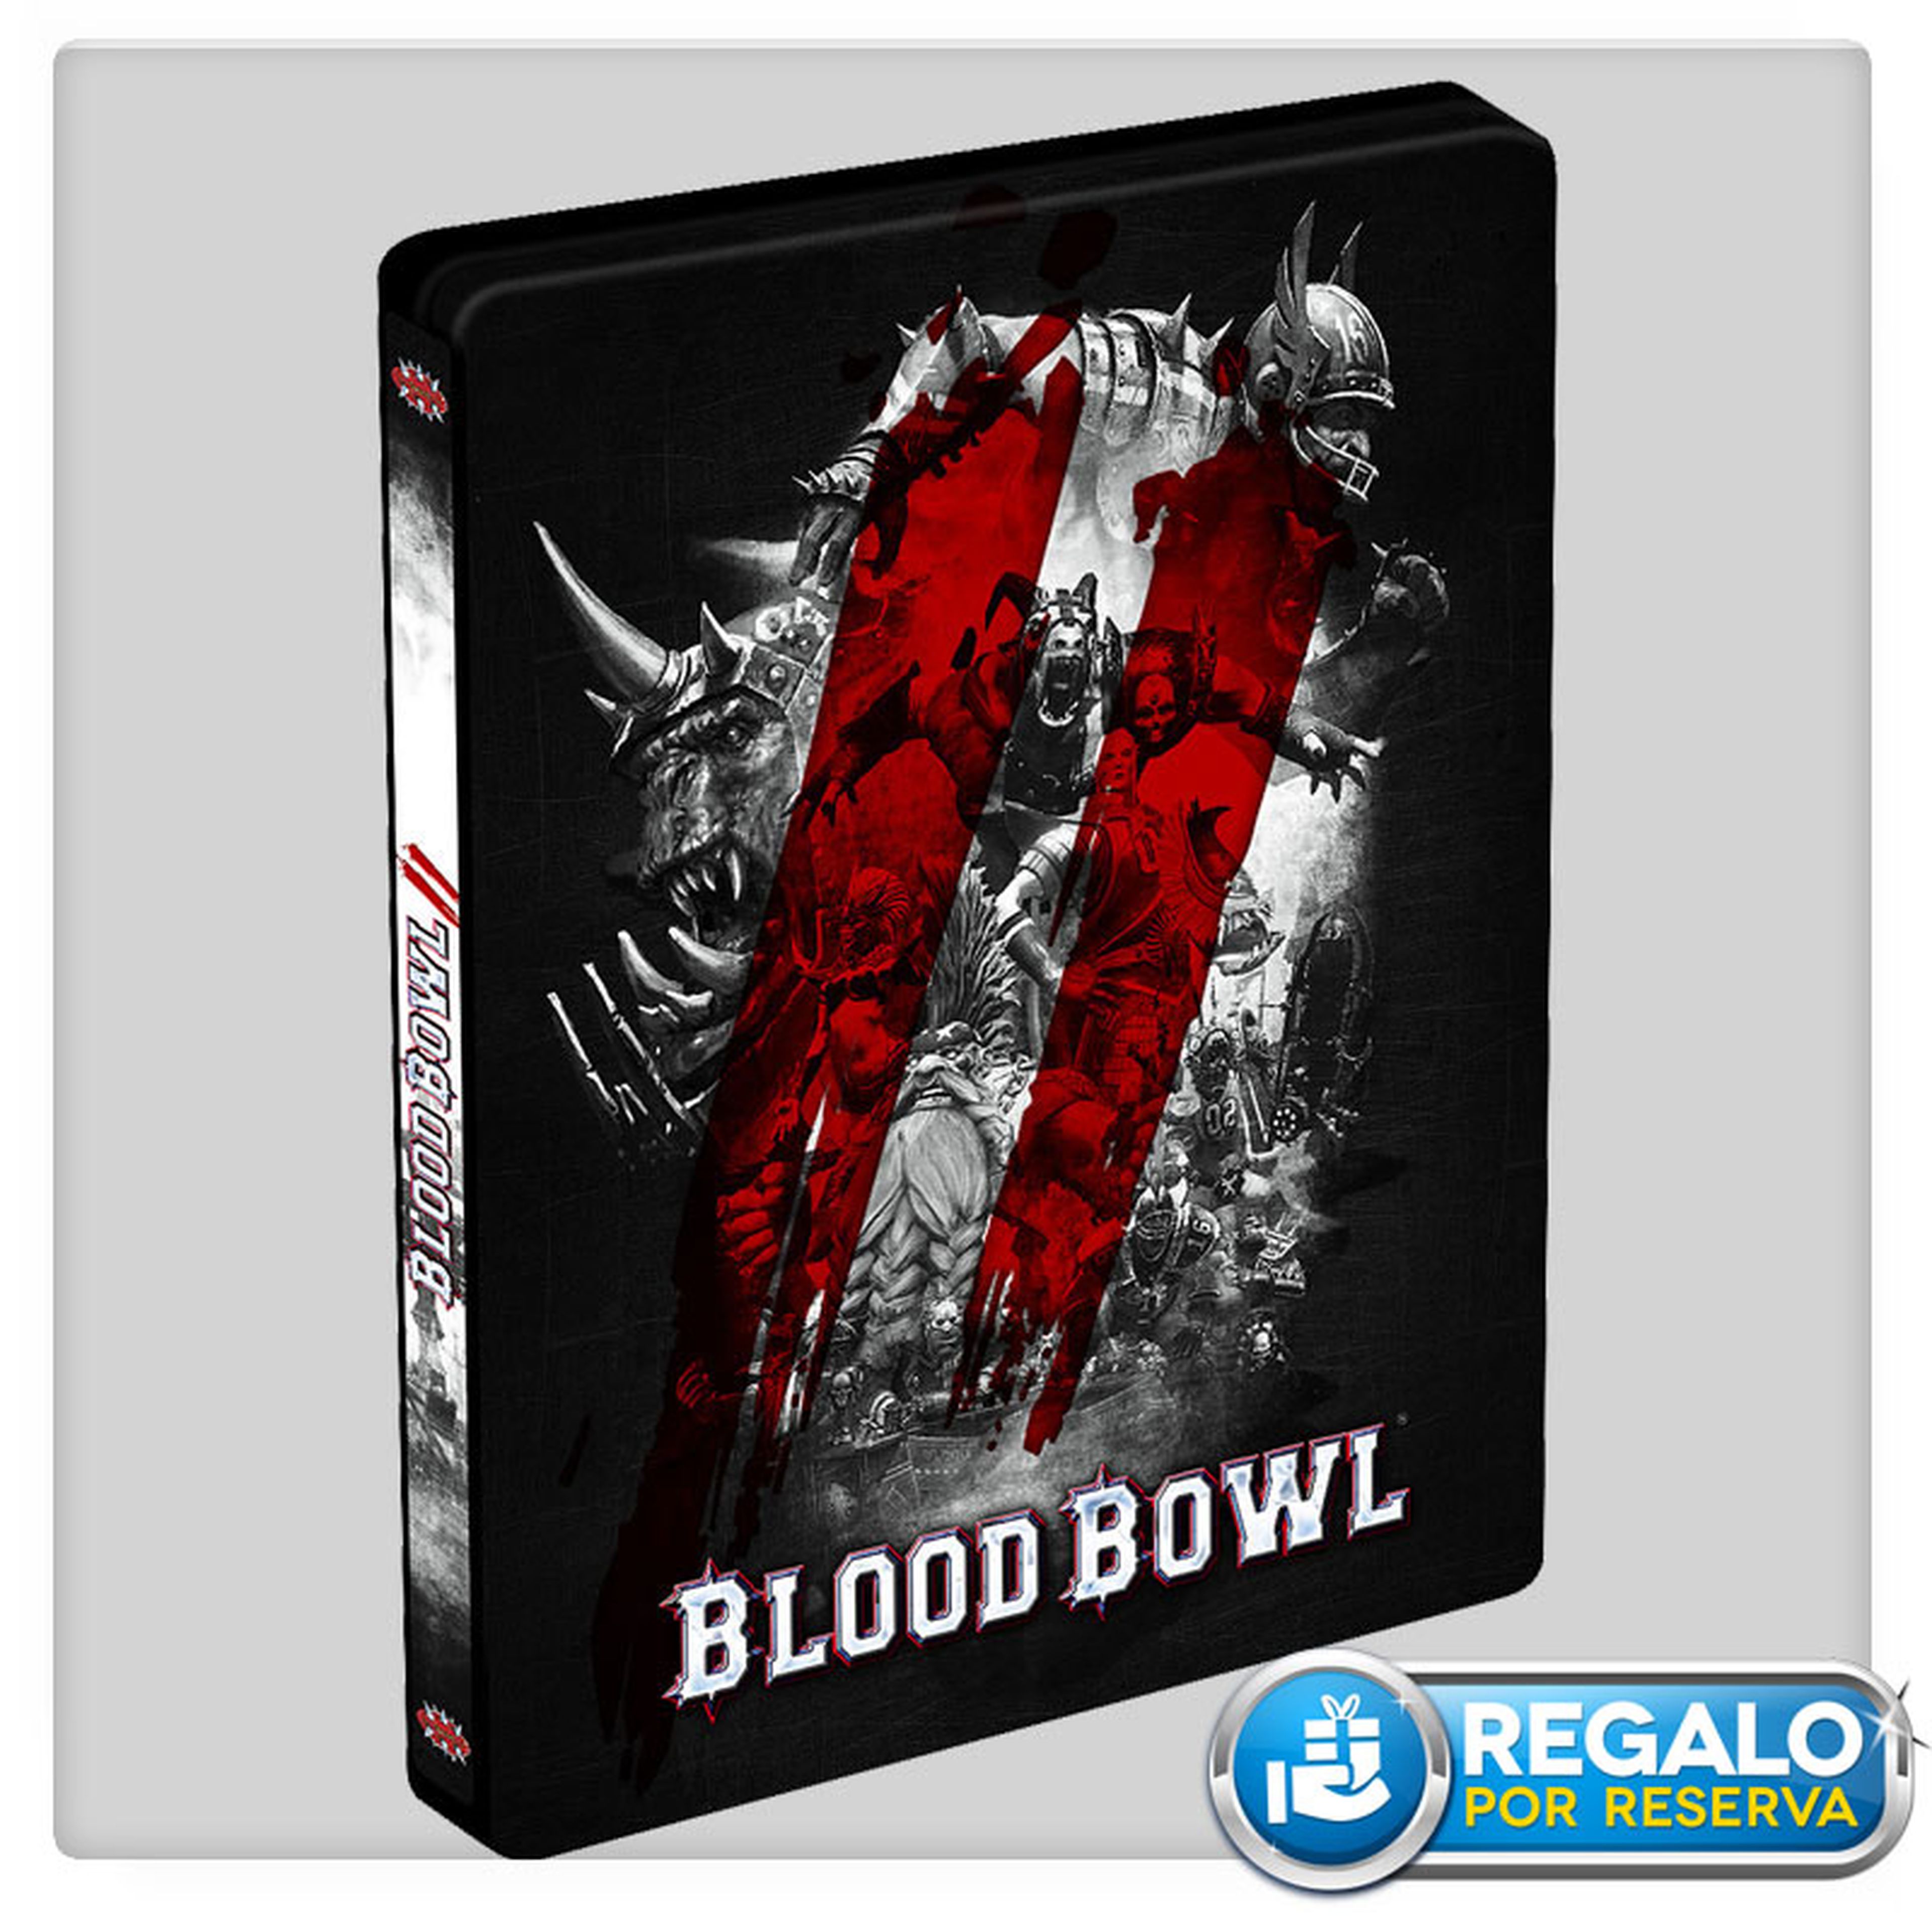 Blood Bowl 2, DLC de regalo por su reserva en GAME